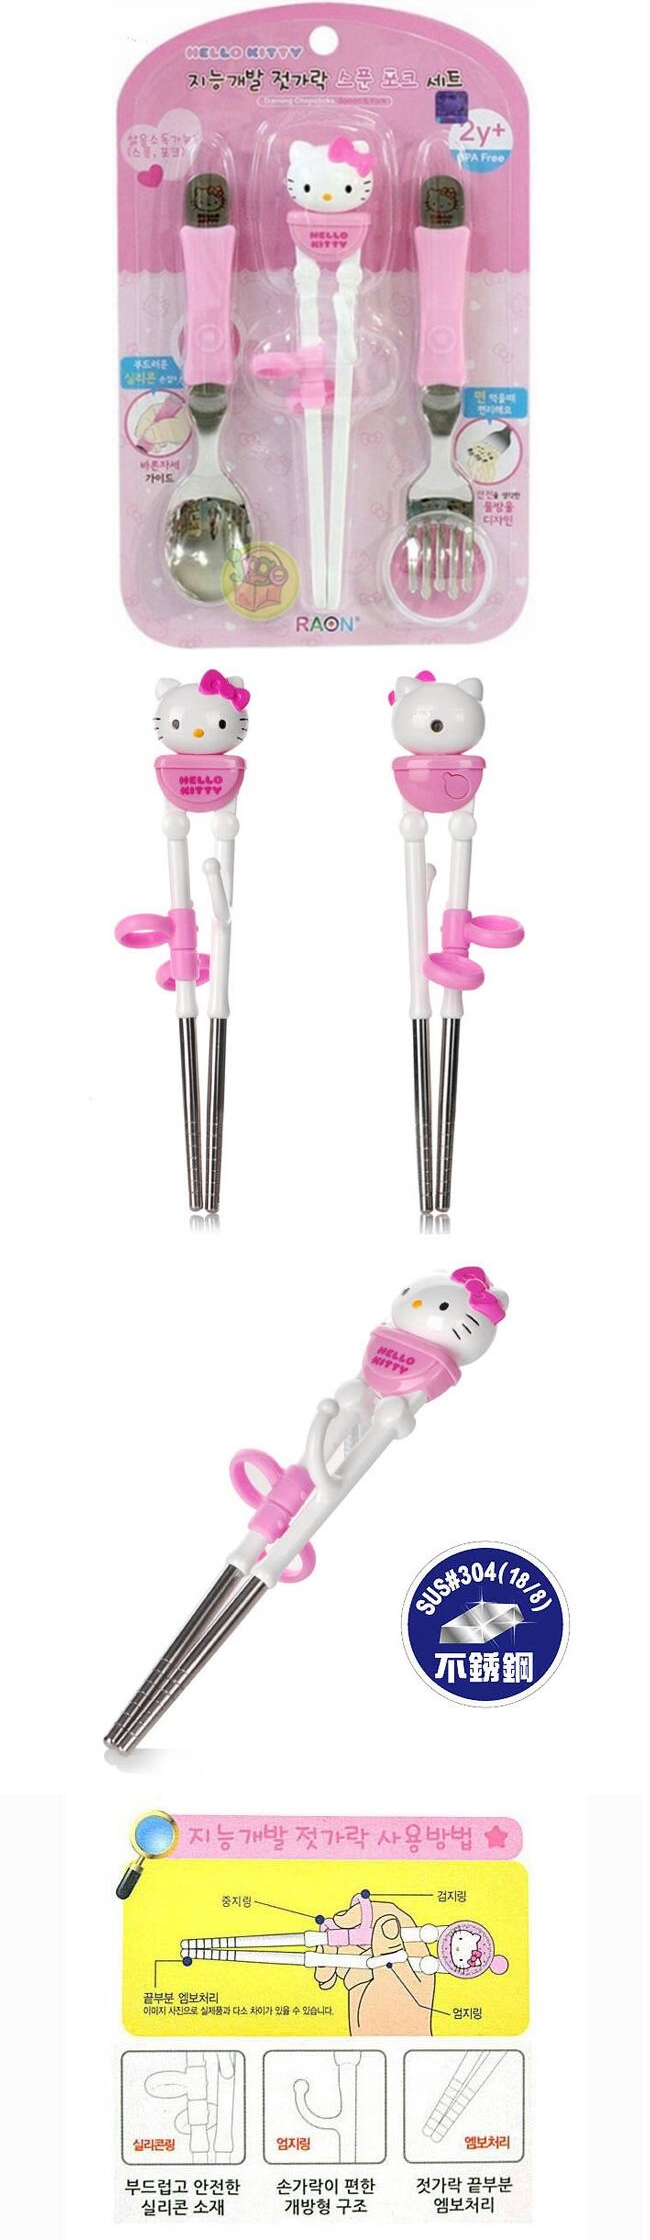 吉而登-Hello Kitty立體不鏽鋼學習餐具組-3入精裝(42022)